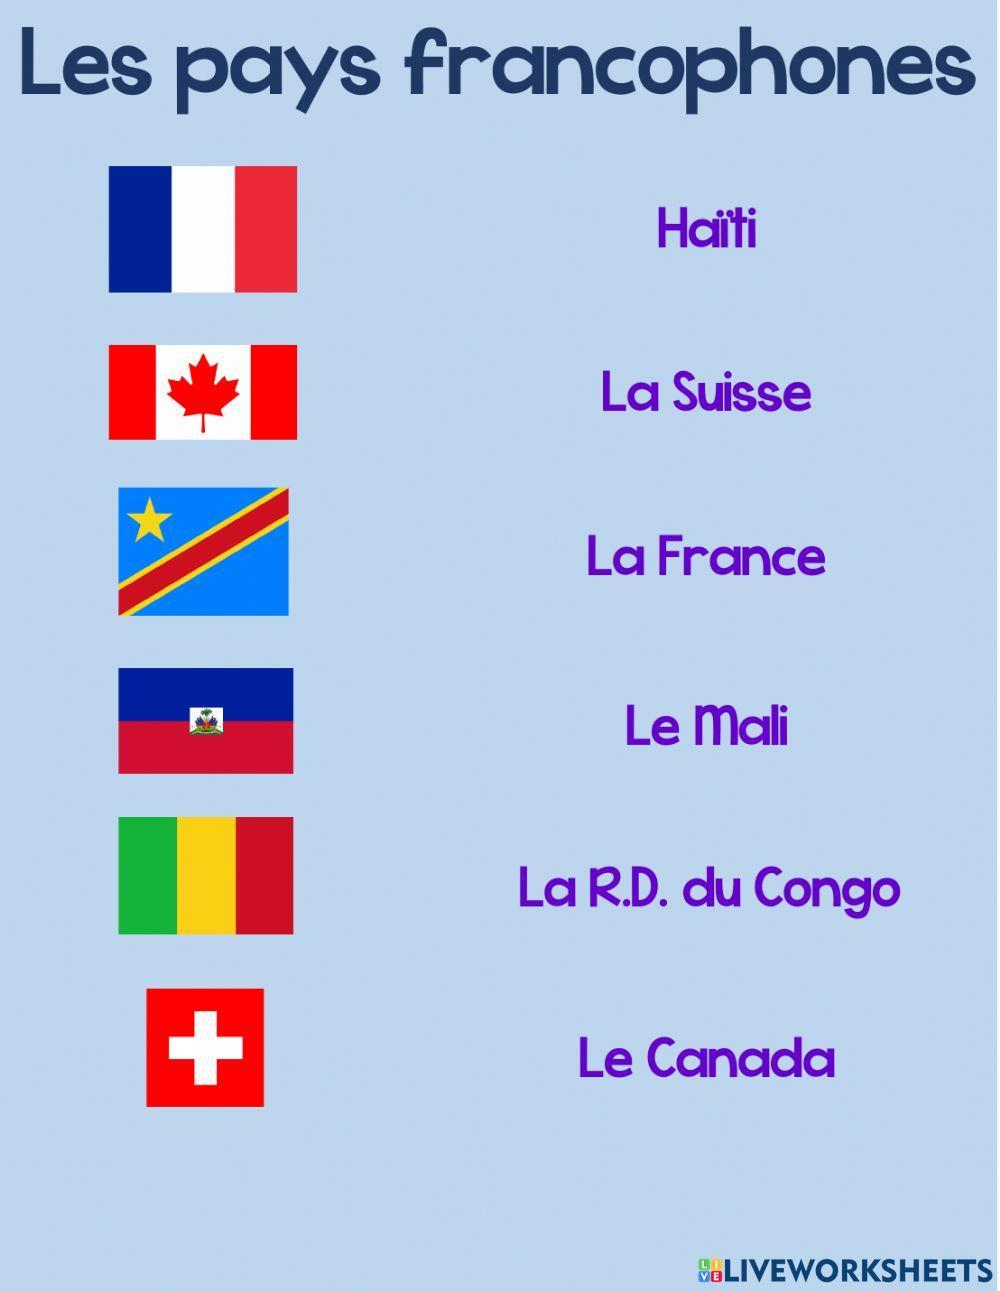 Les pays francophones